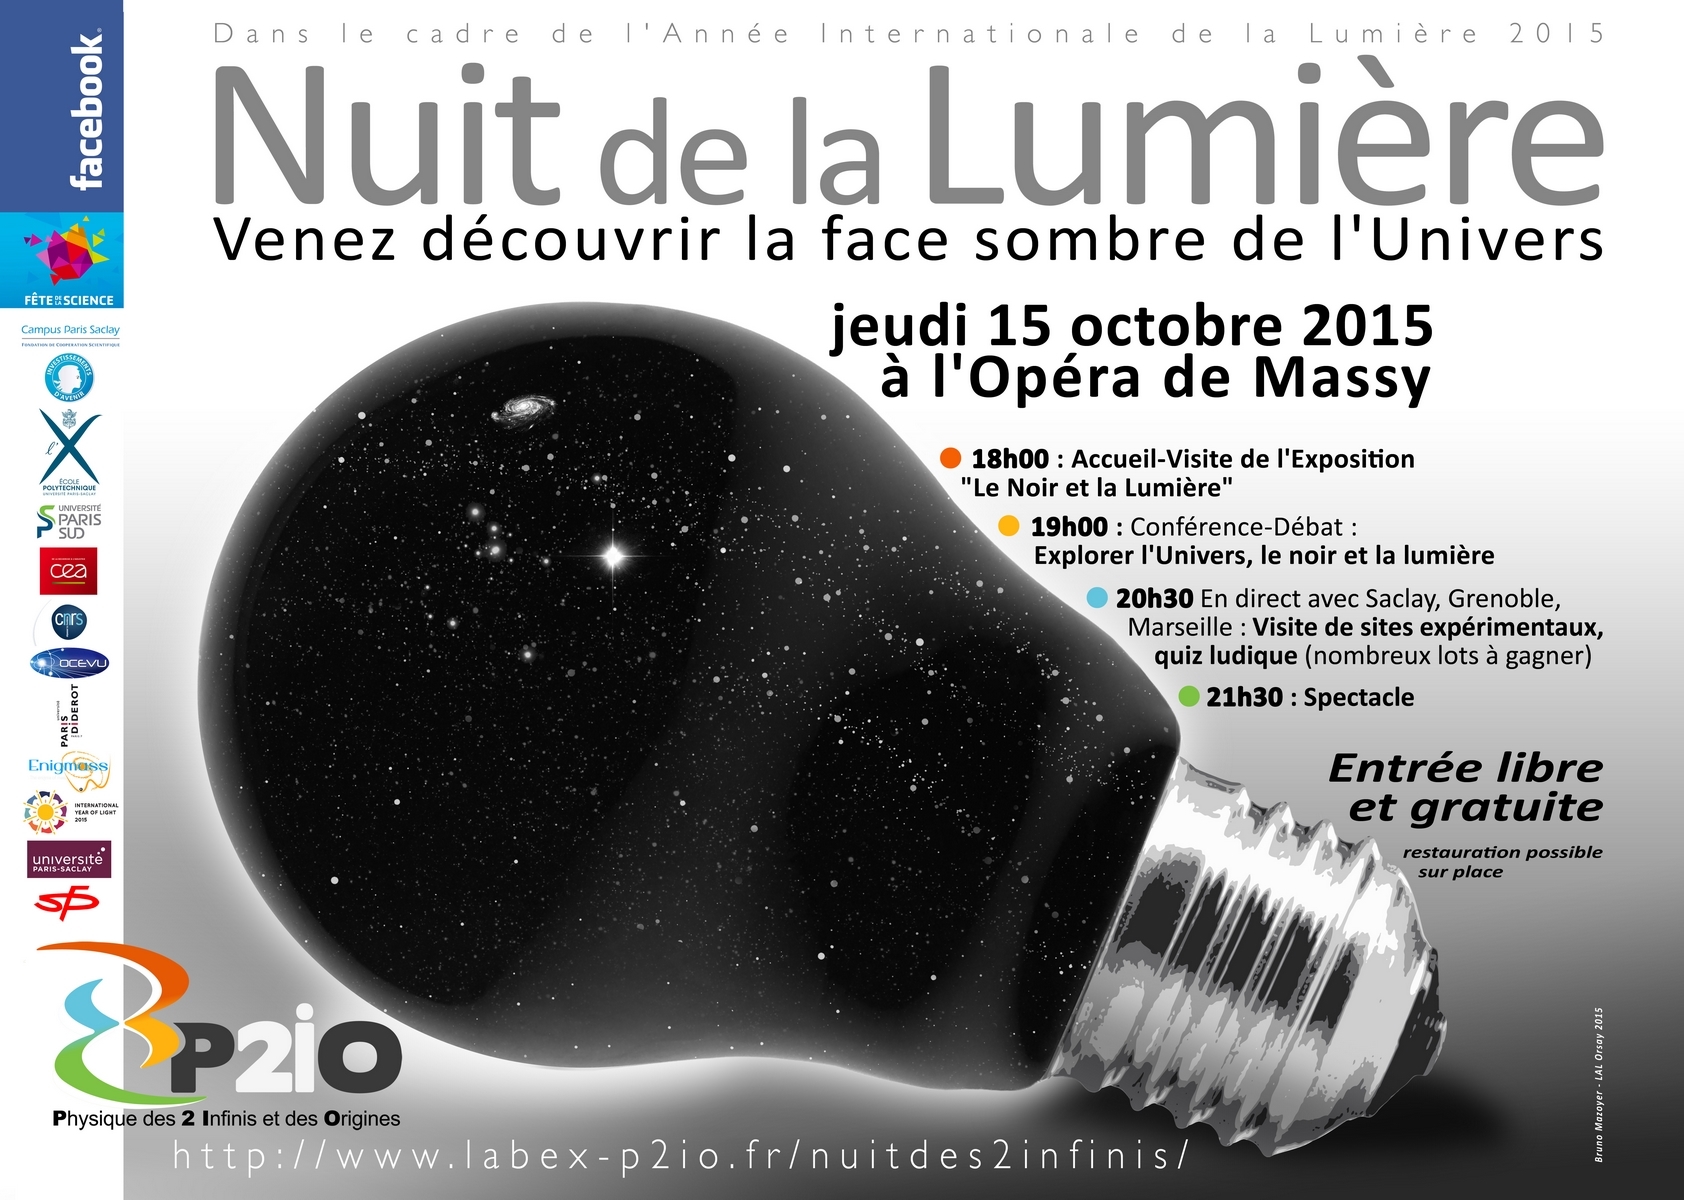 Nuit de la lumière le 15 octobre à l'opéra de Massy à partir de 18h00